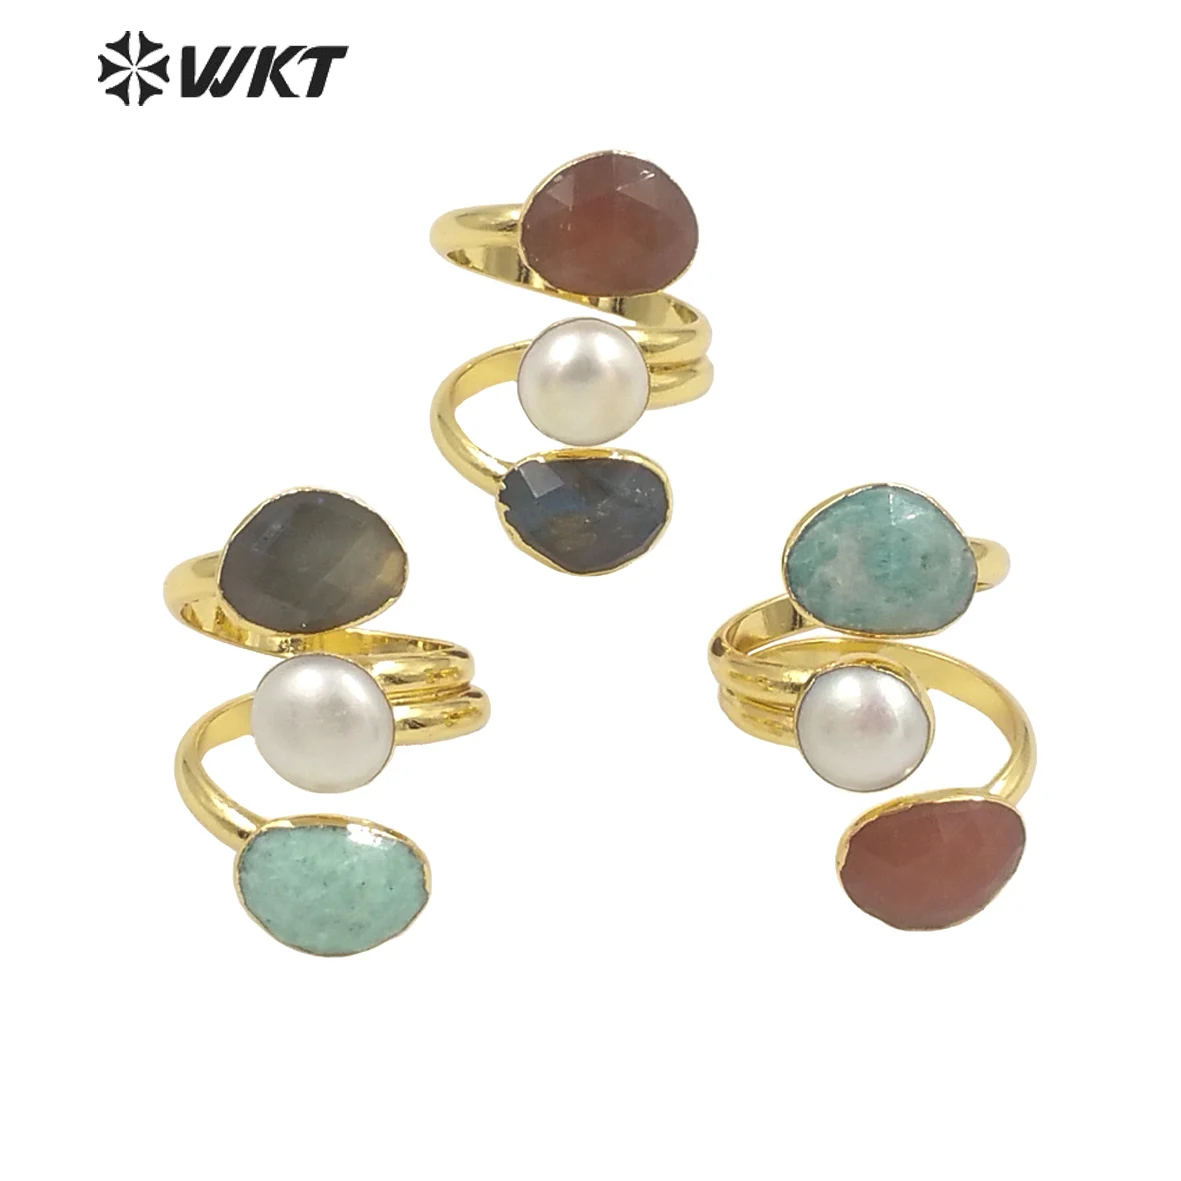 WT-R407 WKT 2022-anillos de moda amazónica Natural, labradorita, Piedra del Sol y perlas, anillos ajustables para boda, fiesta, joyería